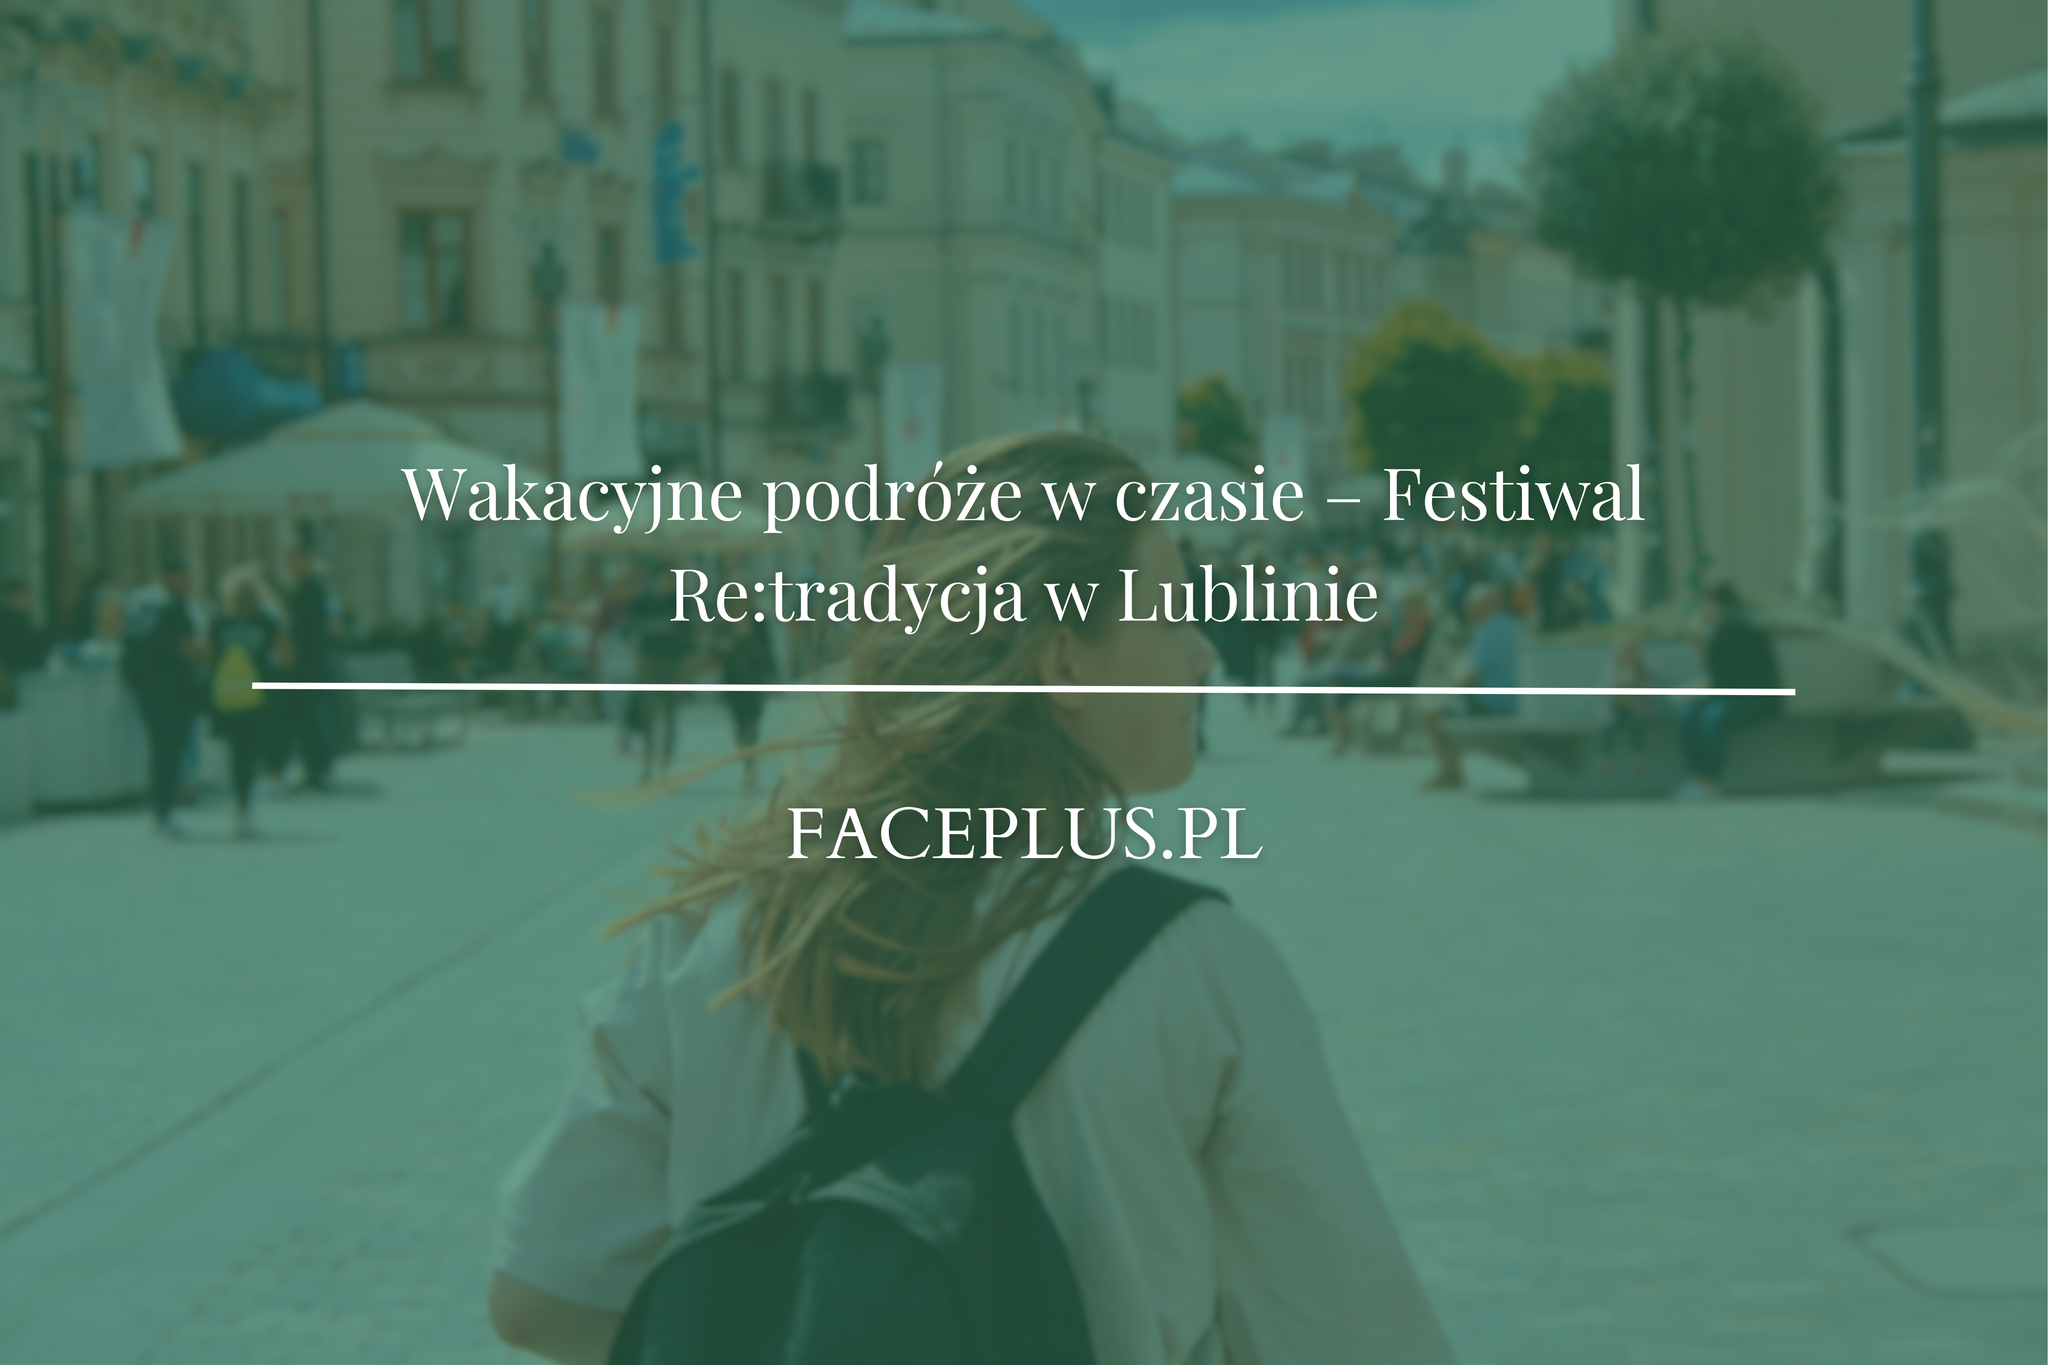 Wakacyjne podróże w czasie – Festiwal Re:tradycja w Lublinie